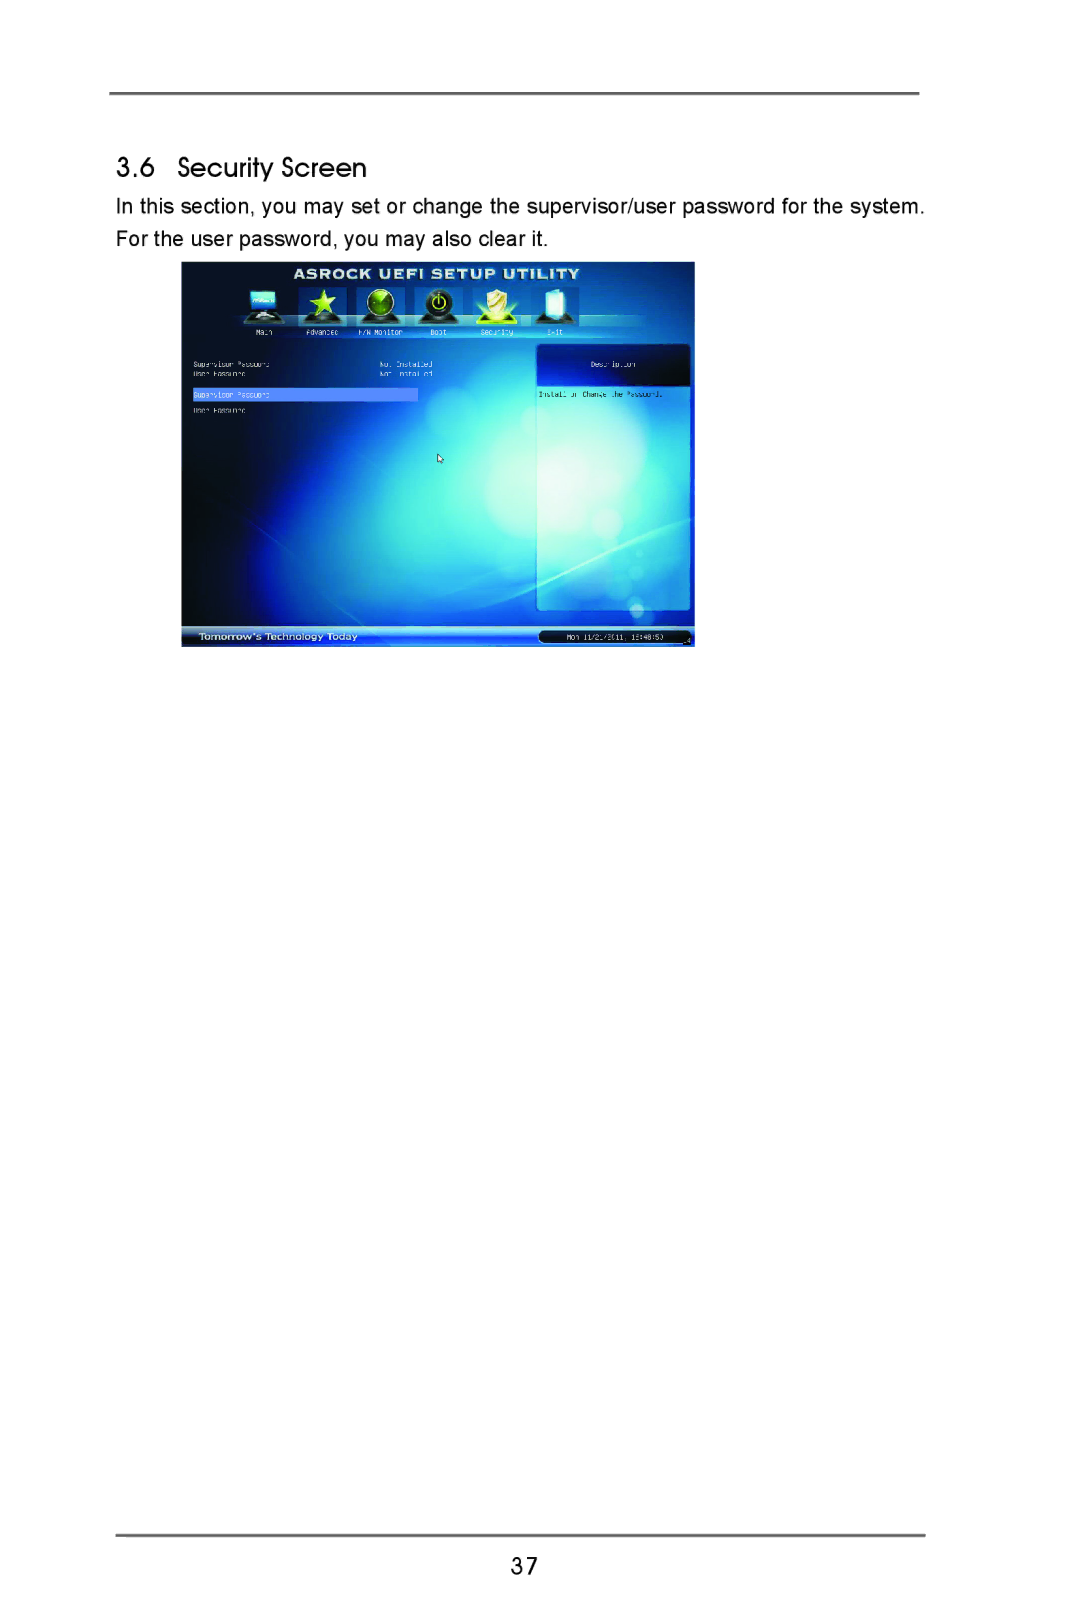 ASRock AD2550B-ITX manual Security Screen 